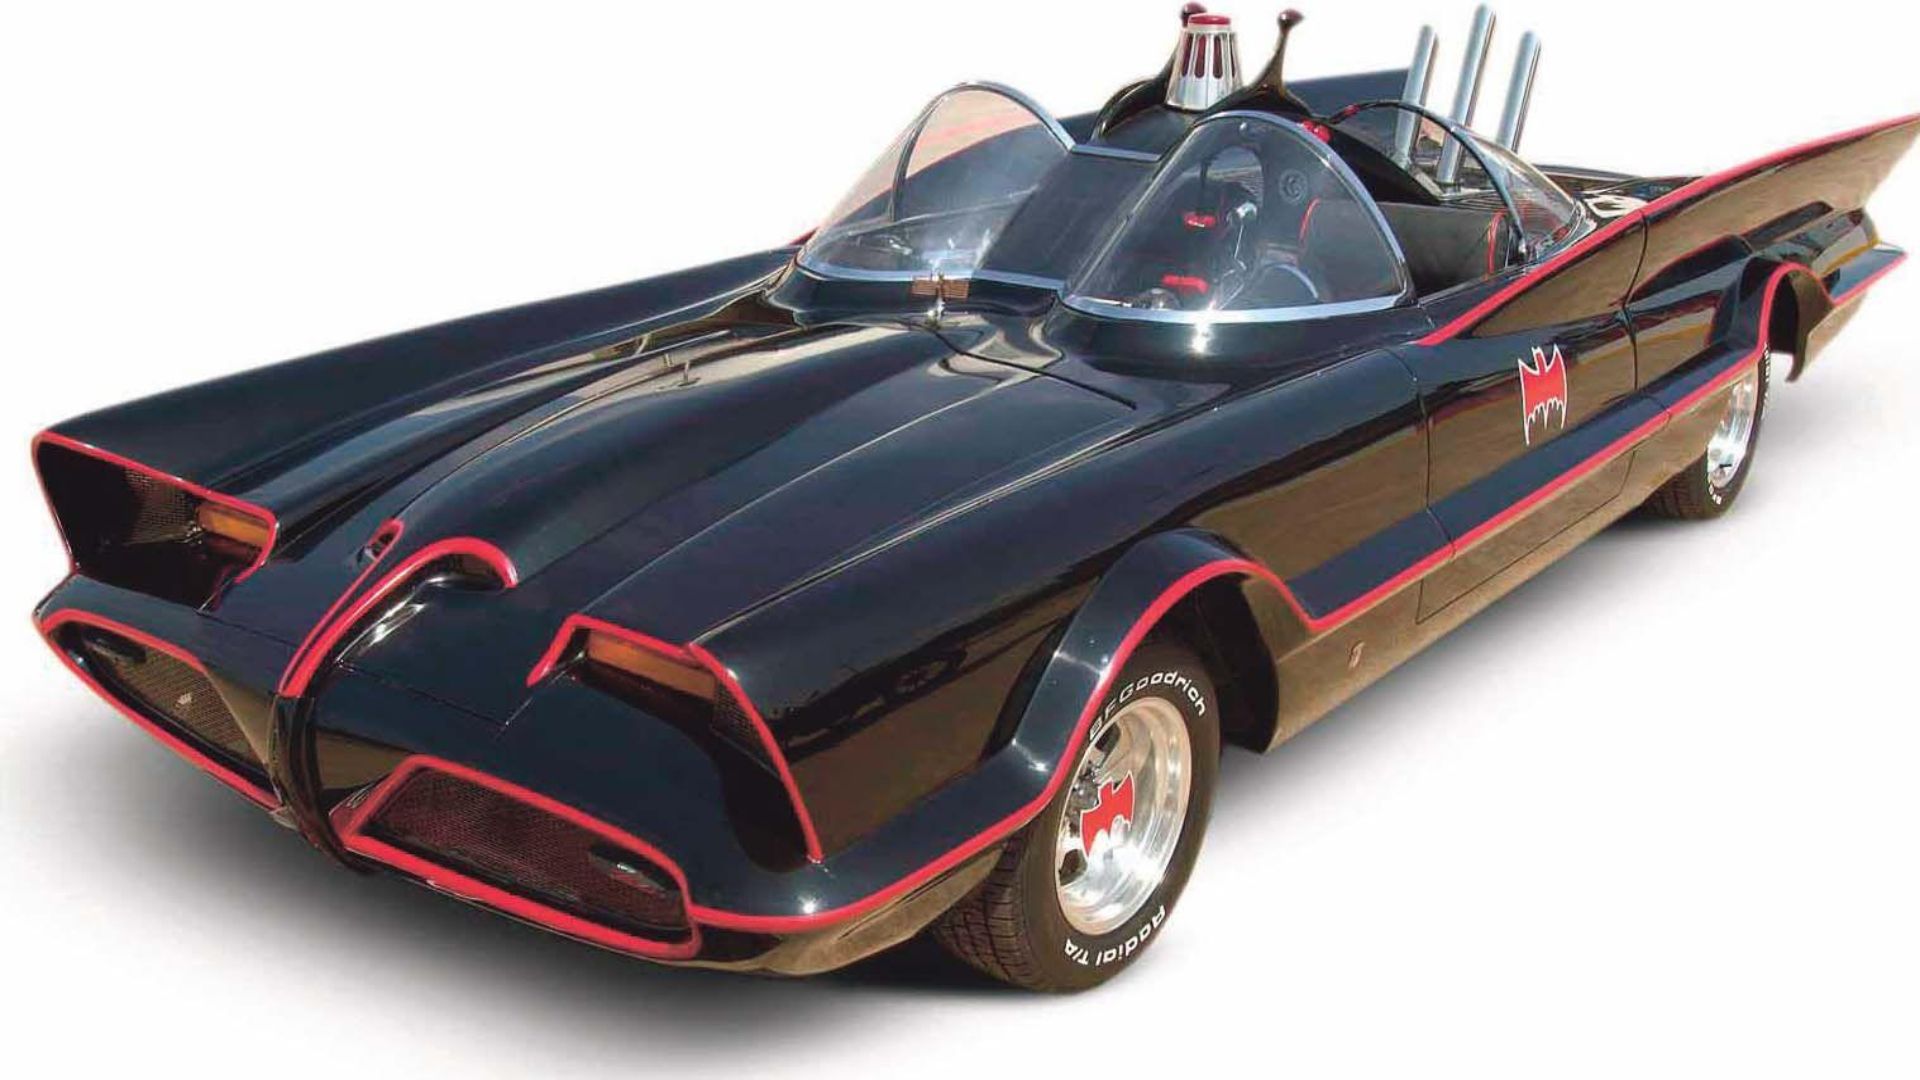 Adam West's Batmobile